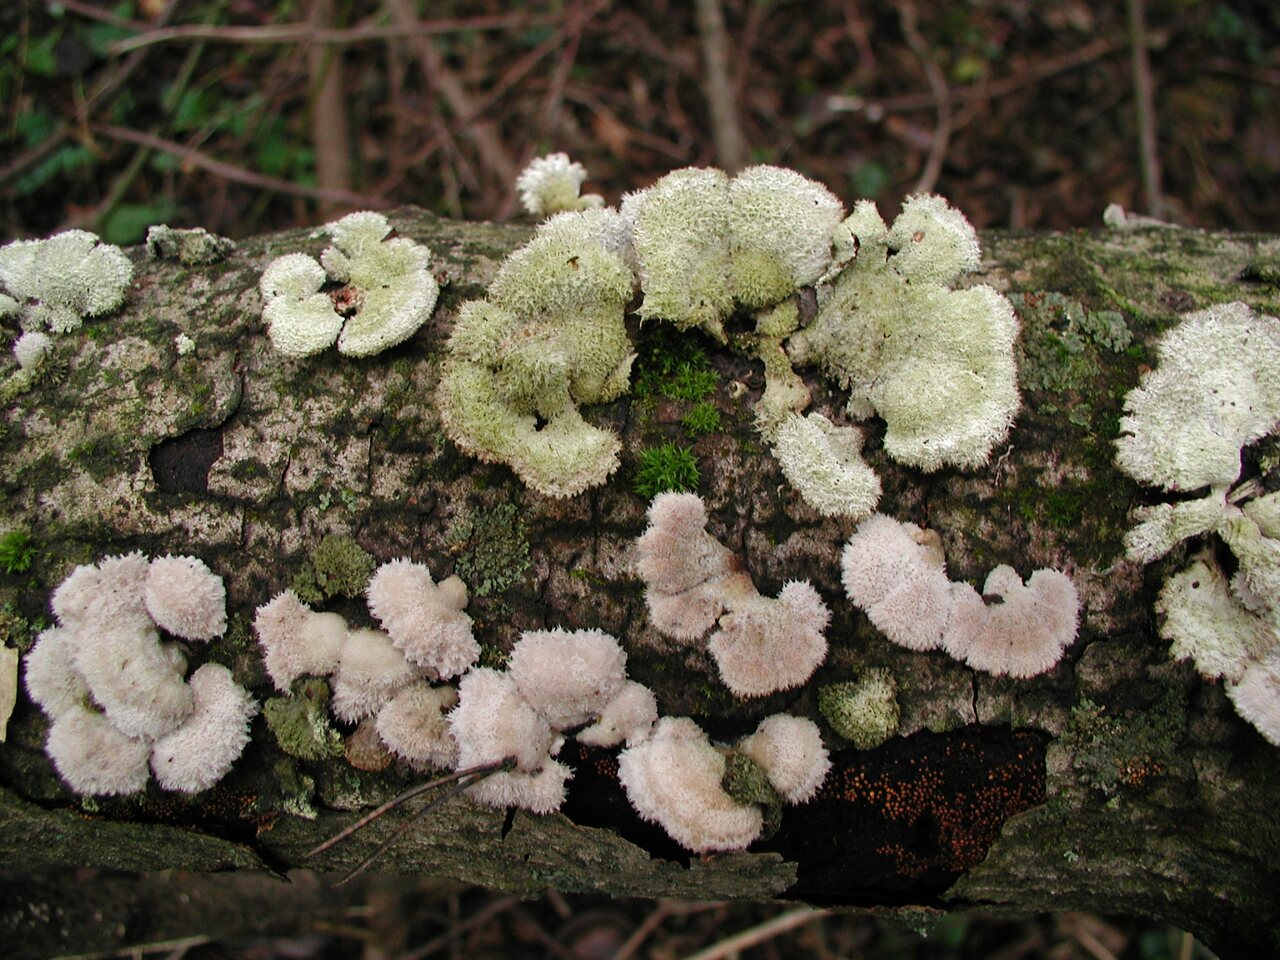 fungi-PB180064.jpg